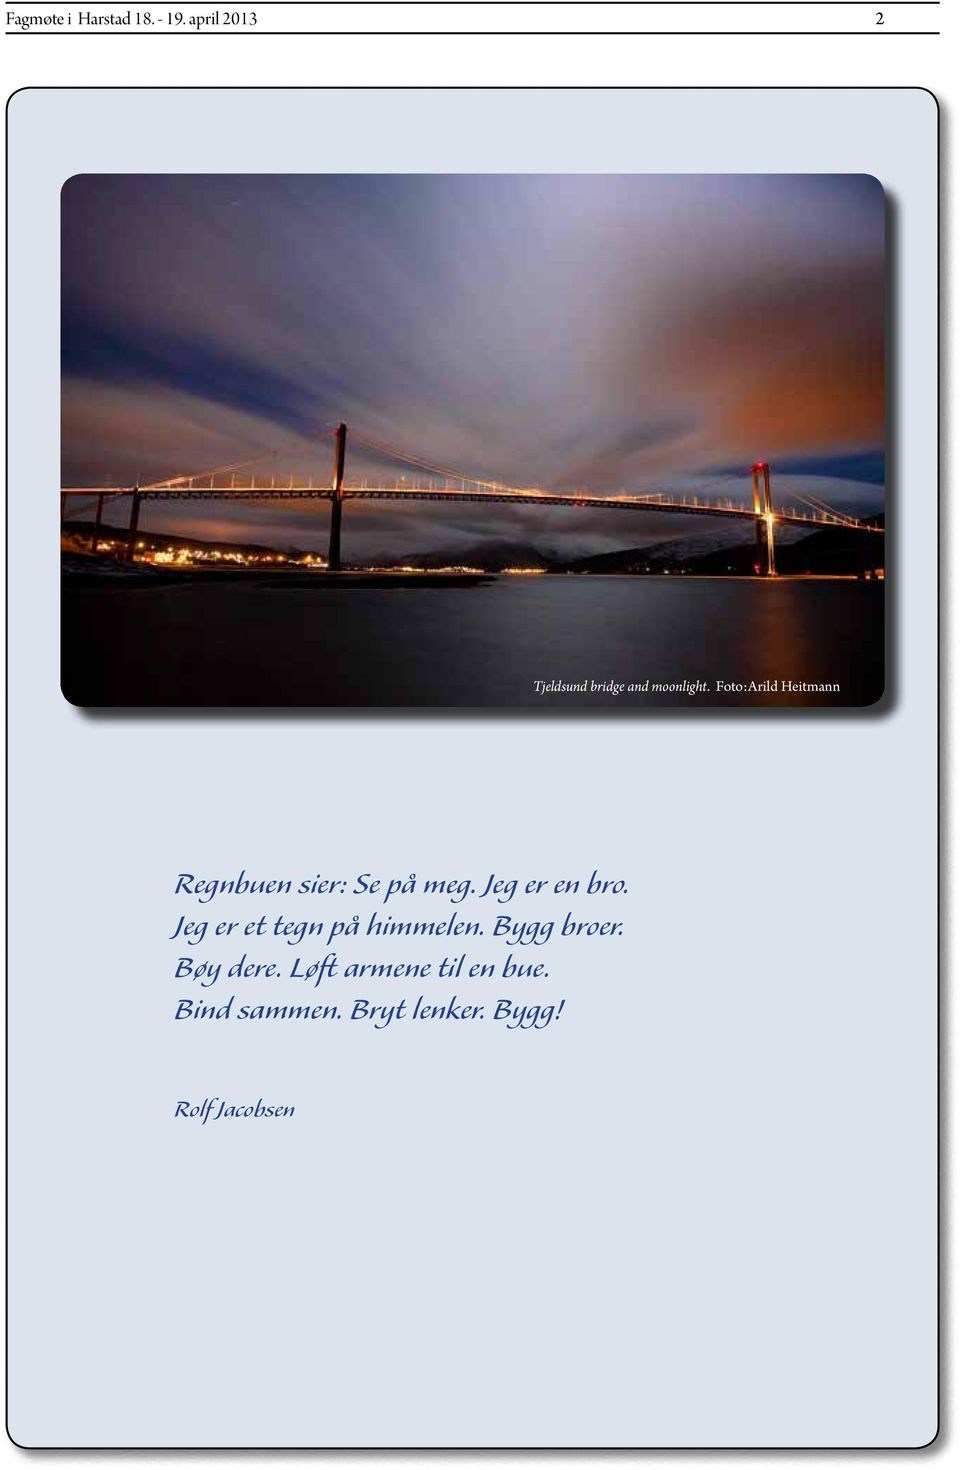 Foto:Arild Heitmann Regnbuen sier: Se på meg. Jeg er en bro.